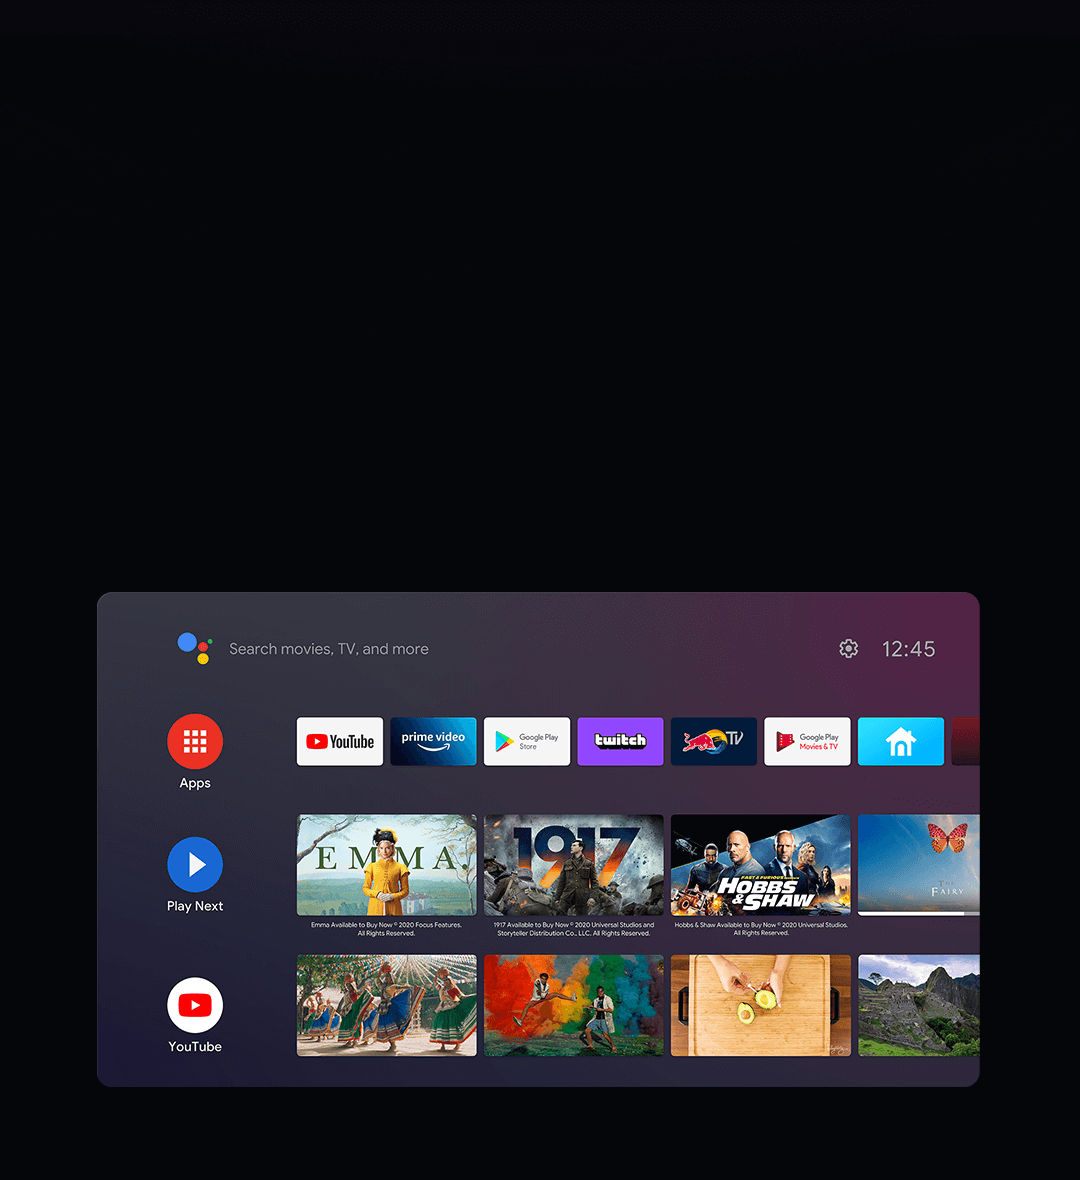 Xiaomi Tv A2 50 In Tv